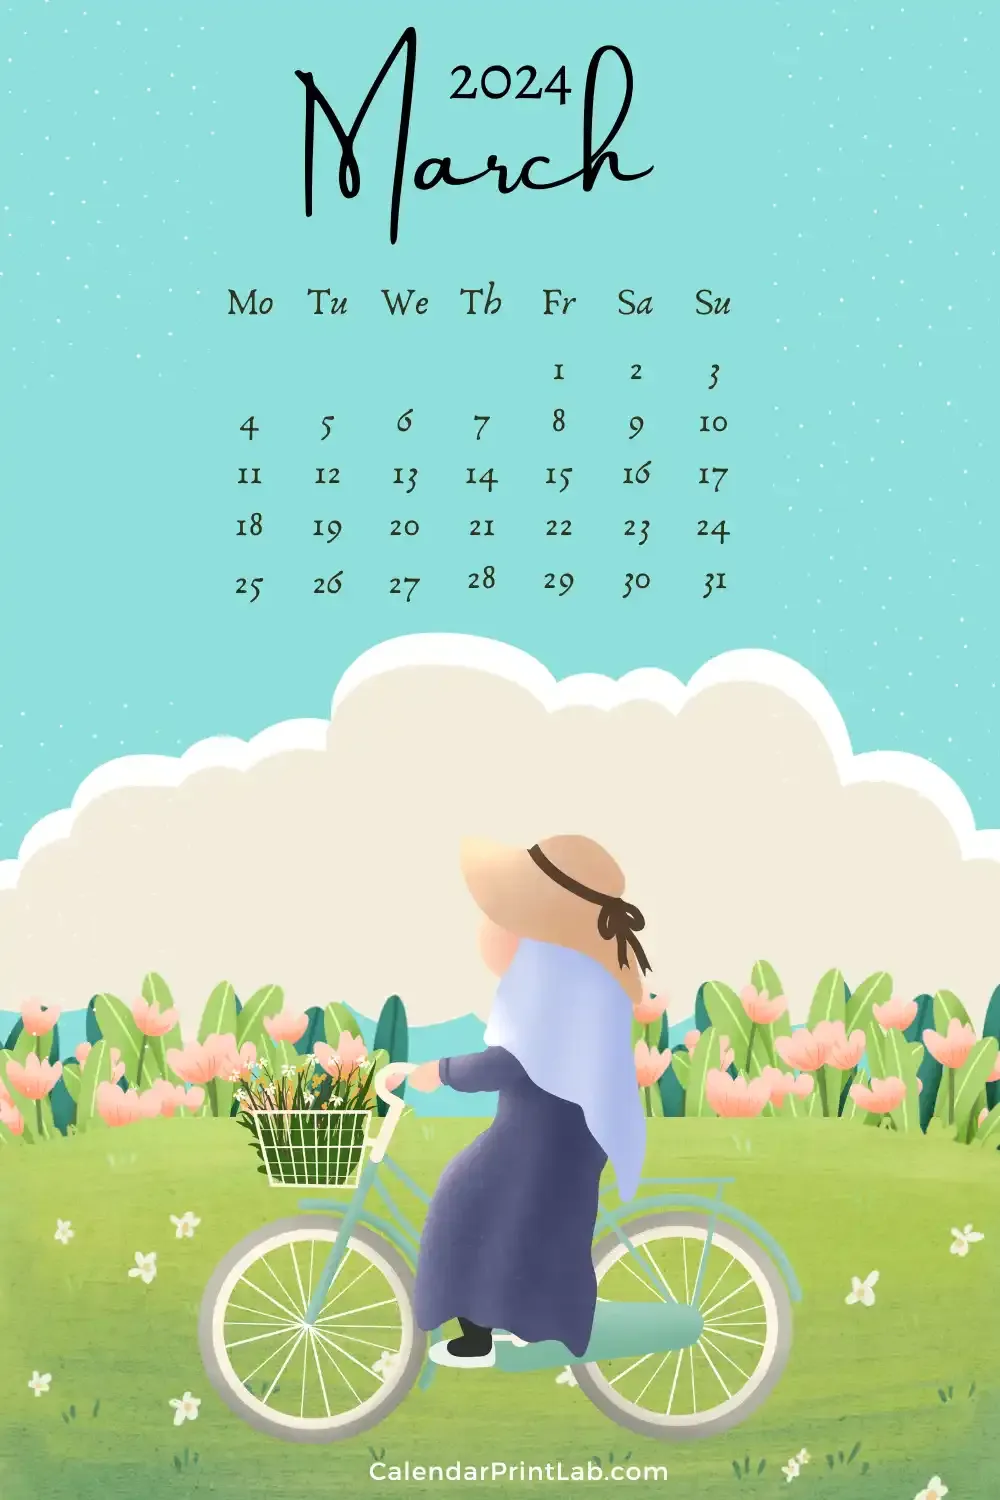 March 2024 iPhone Calendar Wallpaper